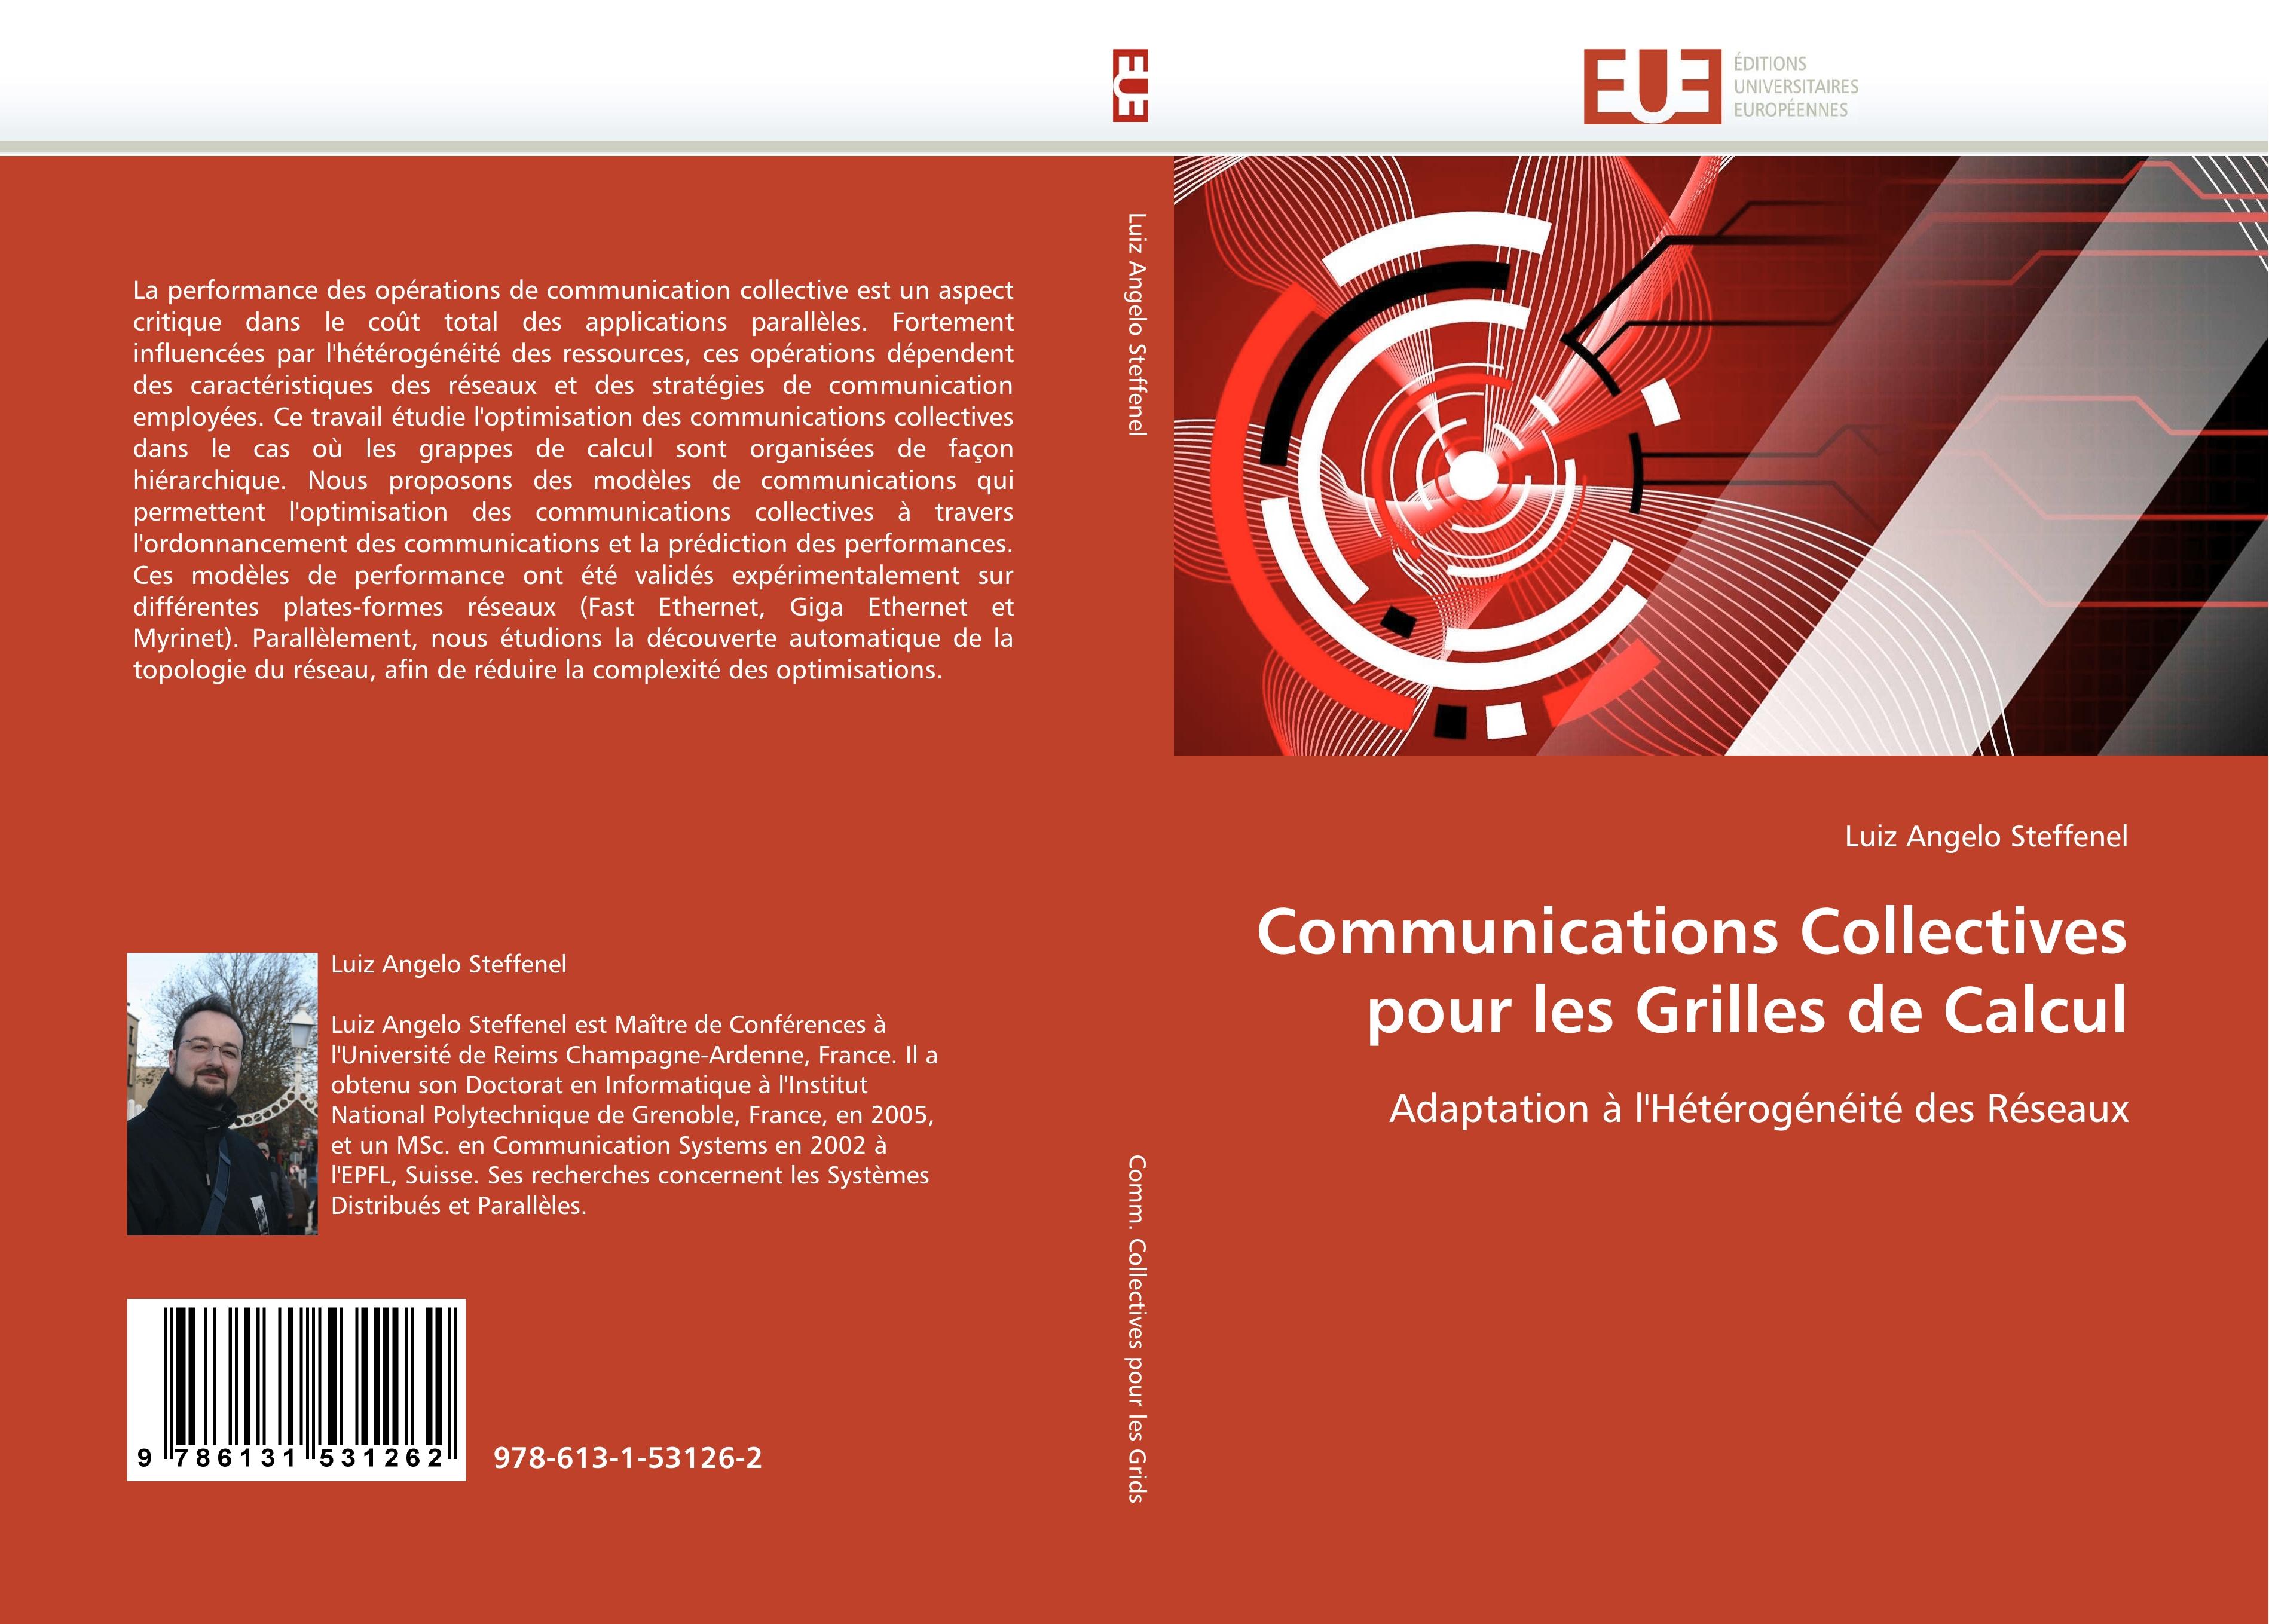 Communications Collectives pour les Grilles de Calcul - Luiz Angelo Steffenel